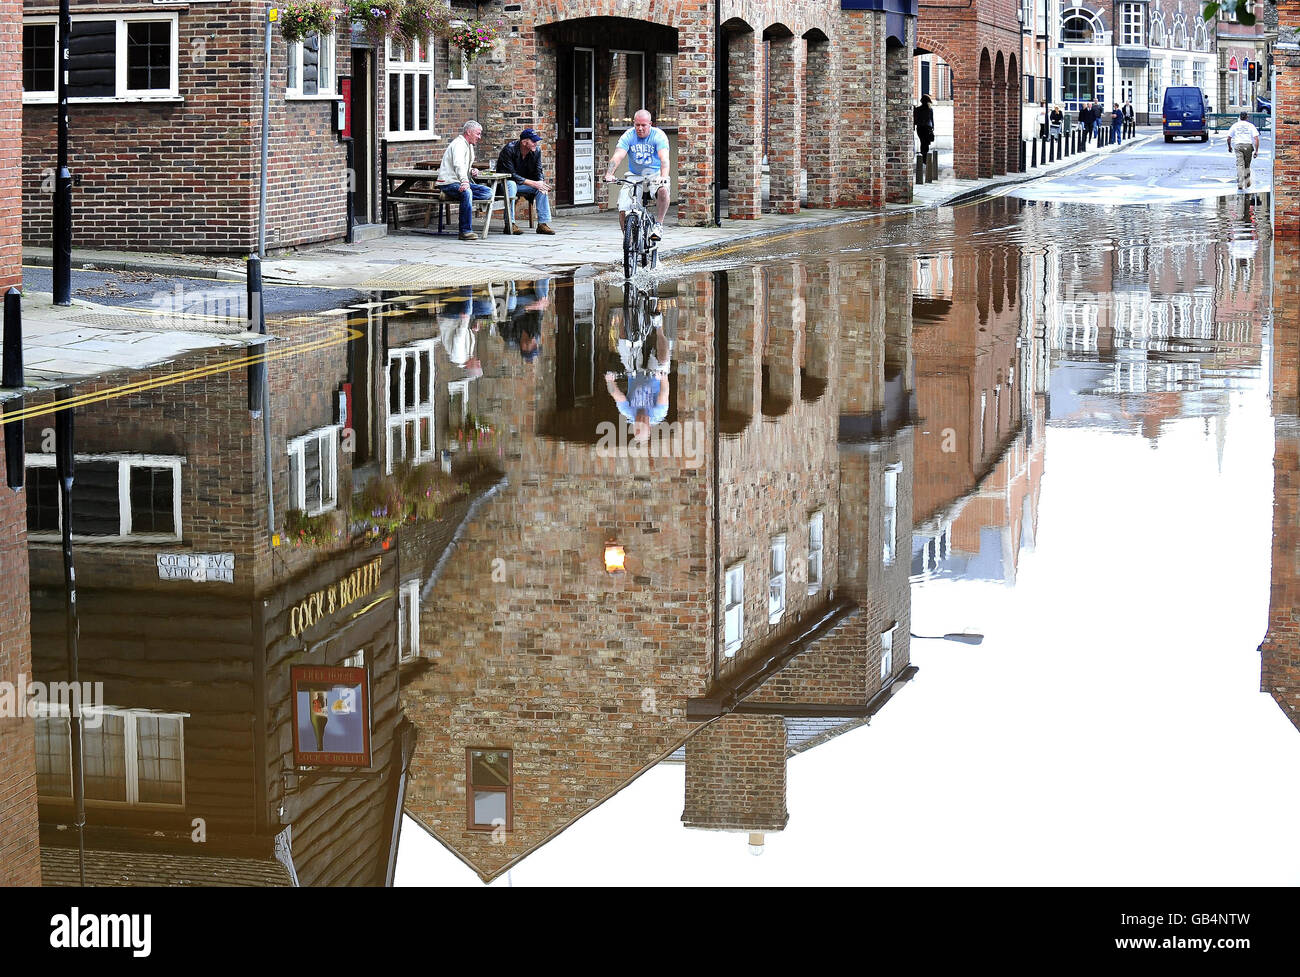 Le strade allagate vicino al centro di York, come il fiume Ouse ha causato inondazioni a seguito di pioggia torrenziale durante il fine settimana. Foto Stock